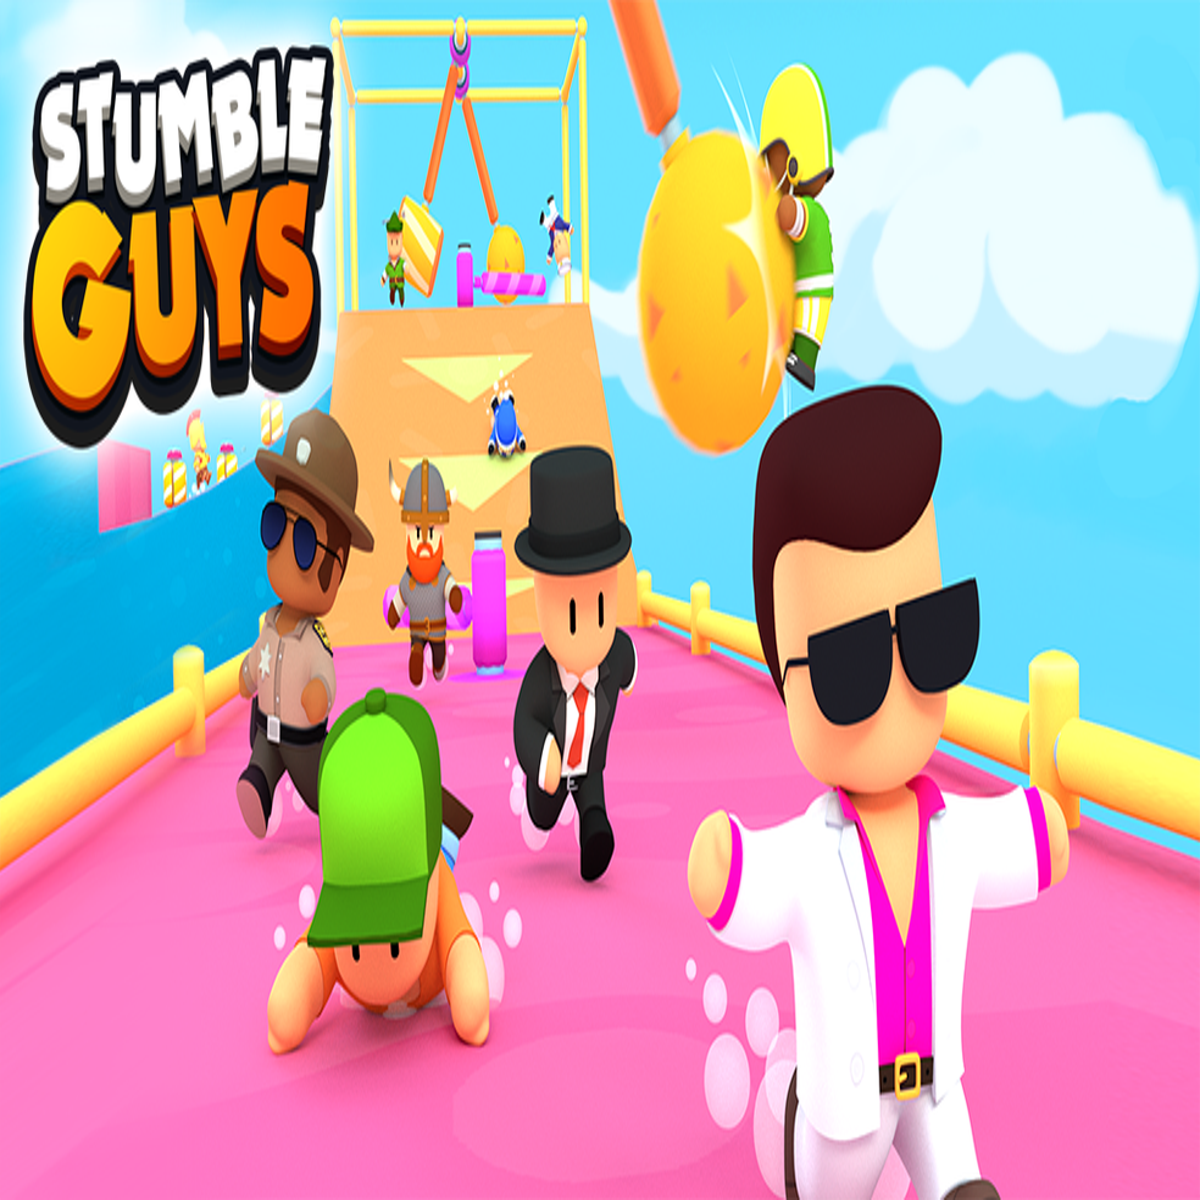 COMO ADICIONAR AMIGOS NO STUMBLE GUYS 0.44.2 #fy #stumbleguys #stumble